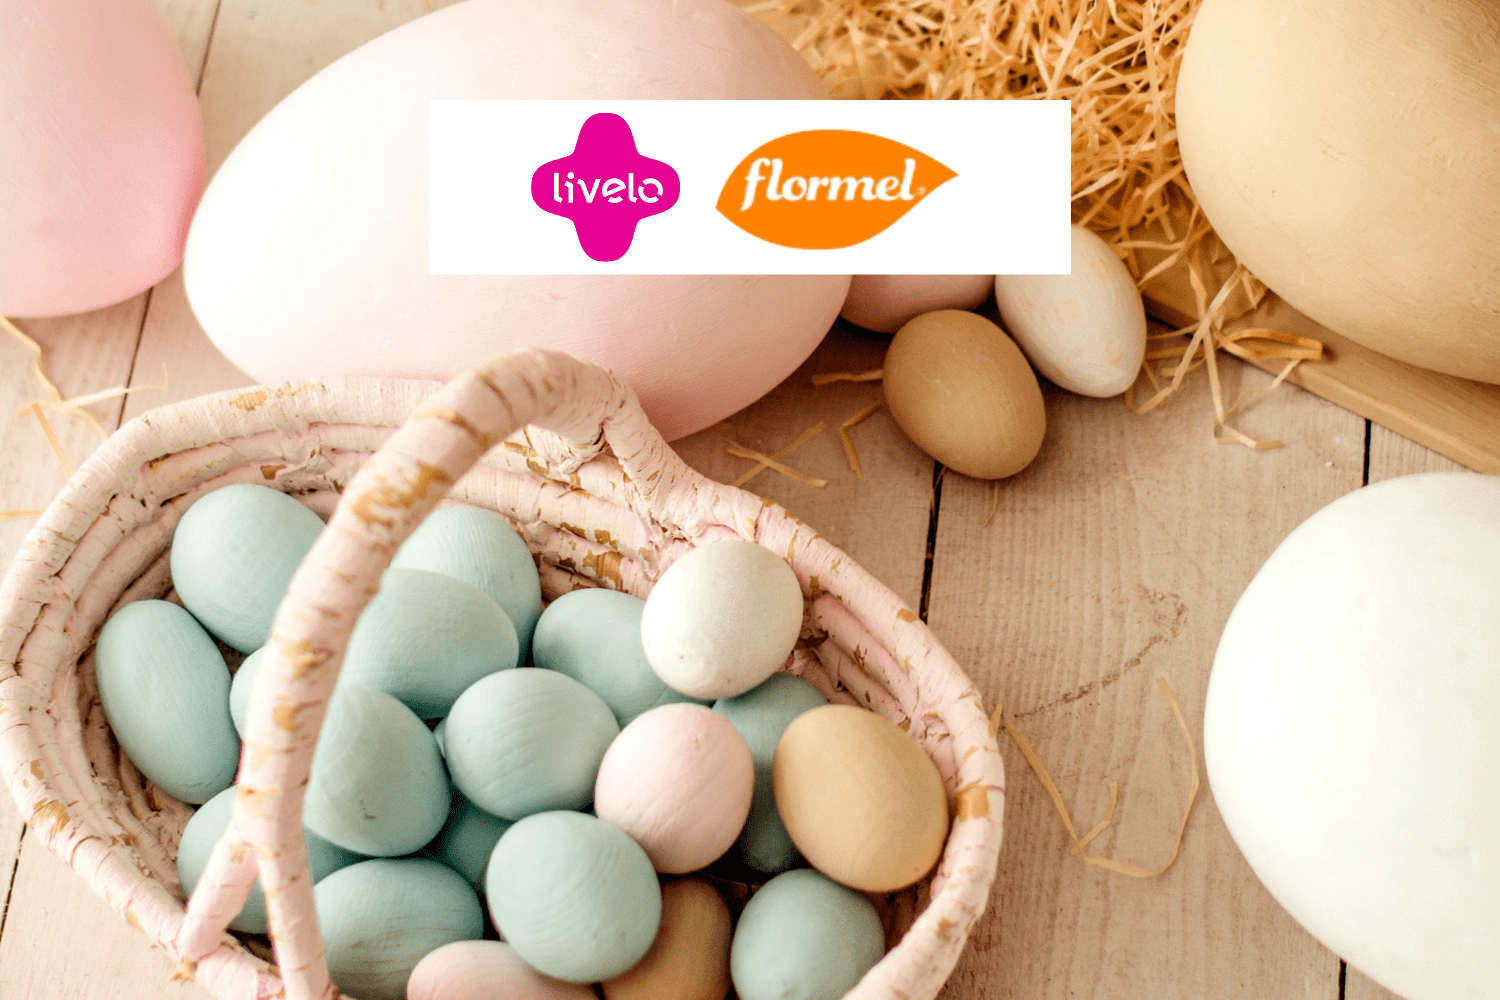 ovos de páscoa com logo Livelo e Flormel 15 pontos Livelo